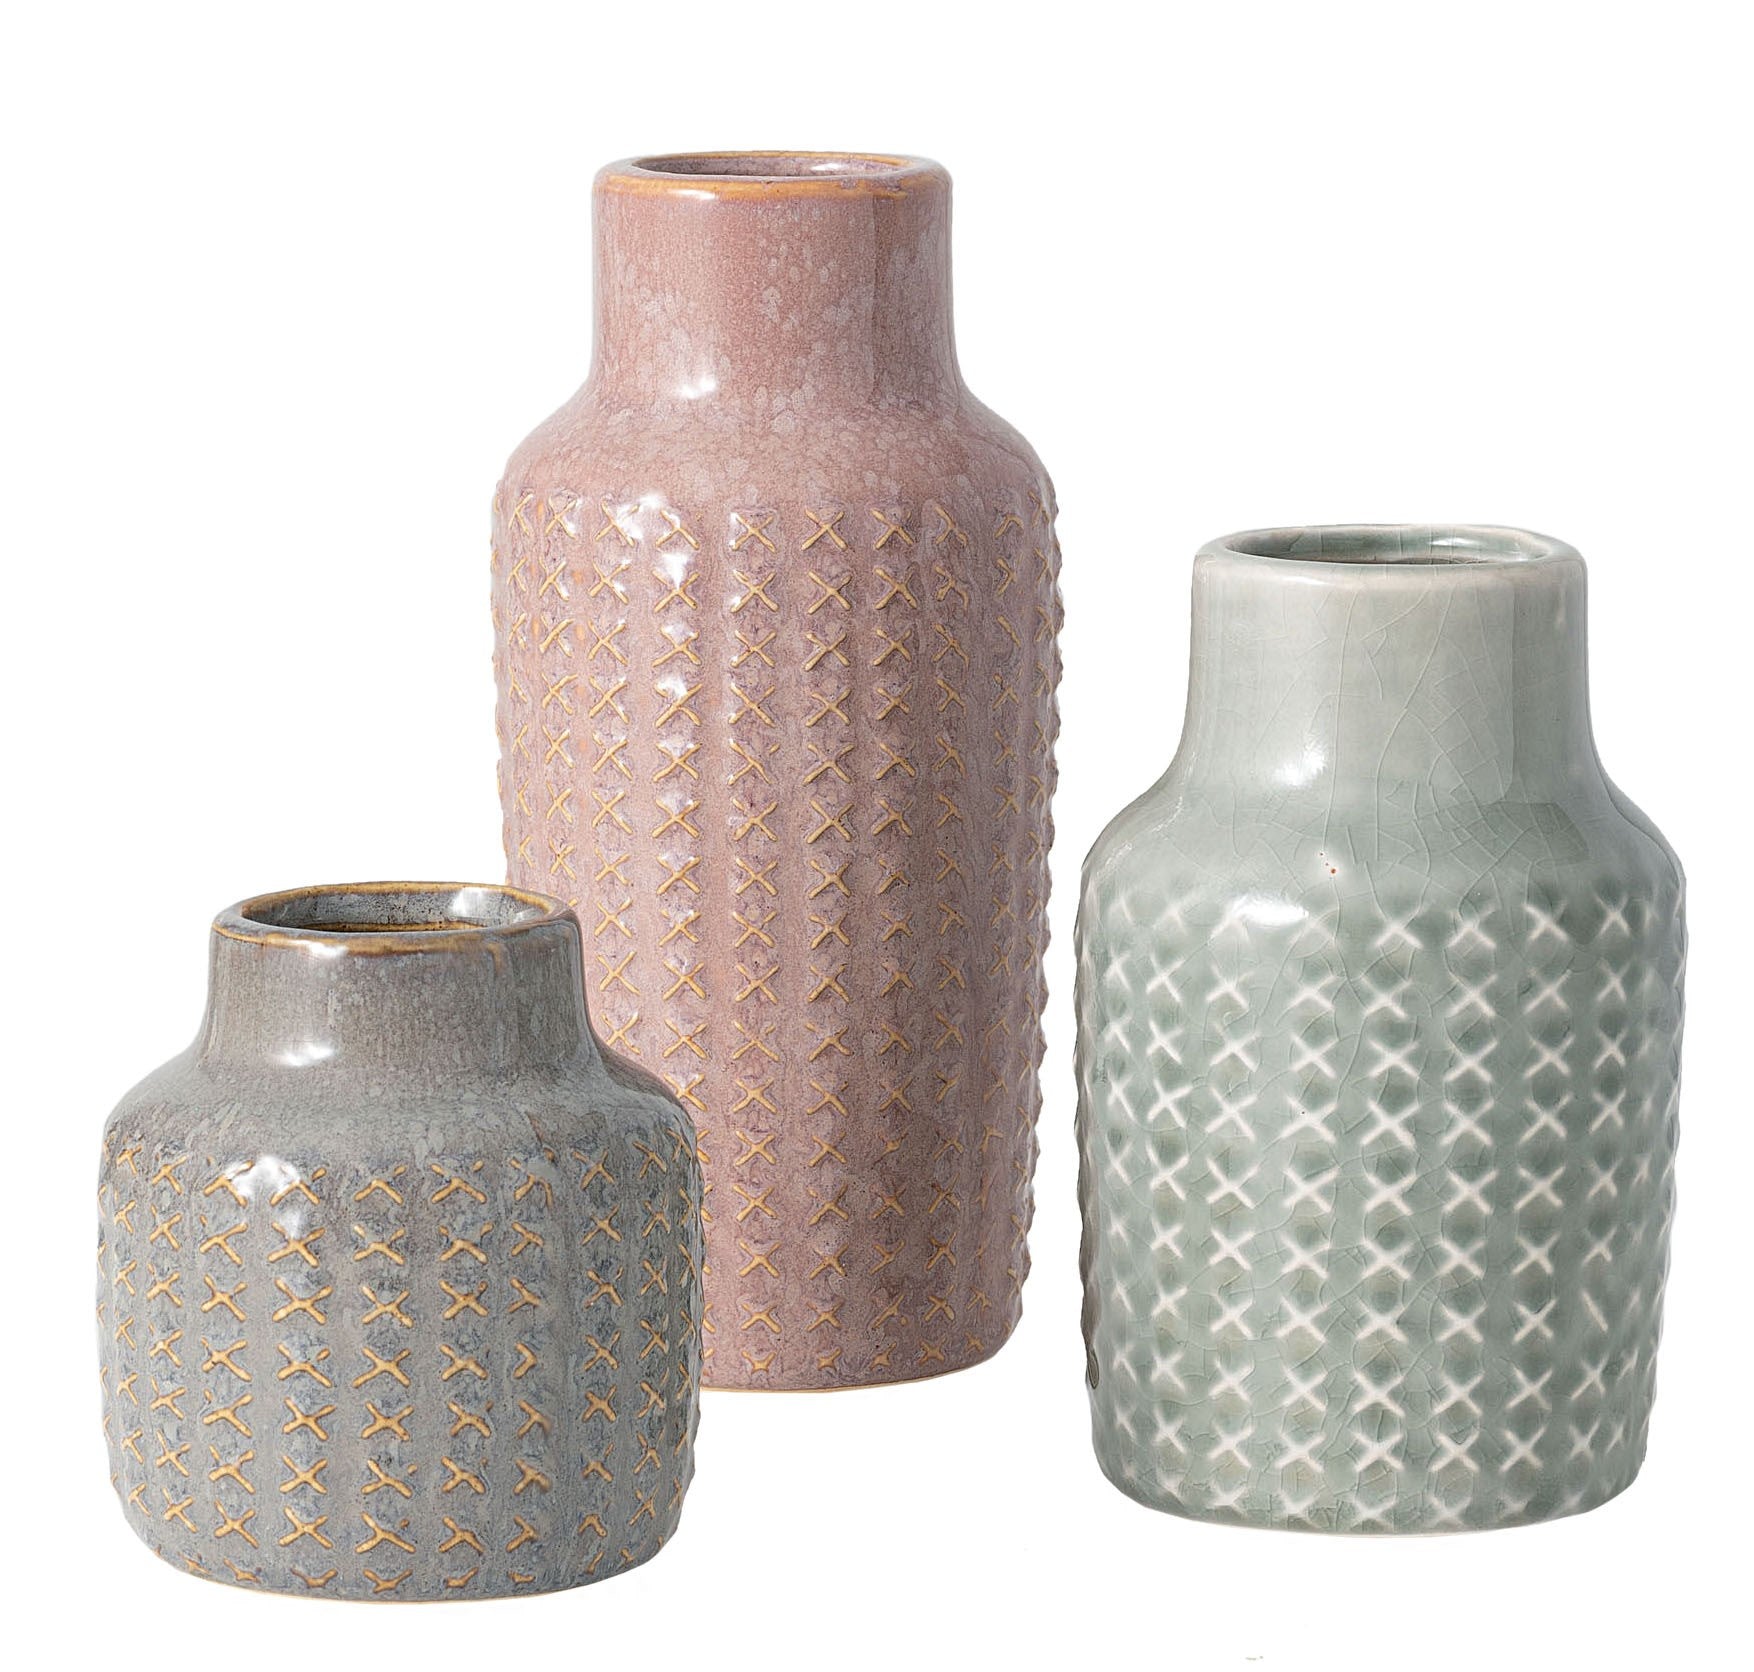 Ceramic Vase - Brown